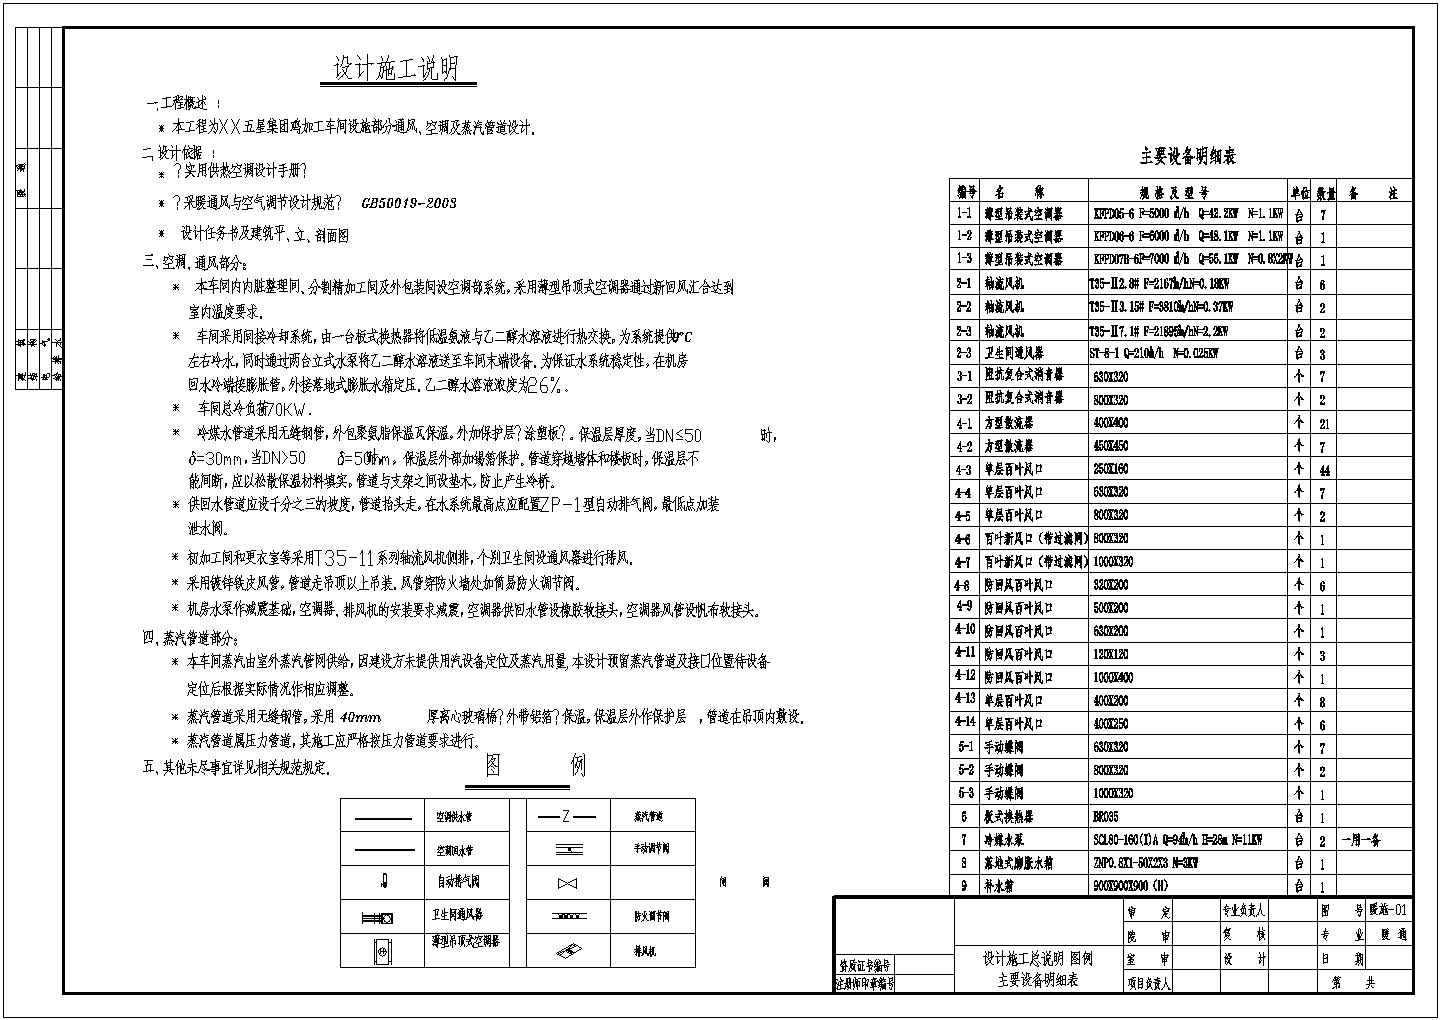 江苏省XX五星集团鸡加工车间设施部分通风、空调及蒸汽管道设计